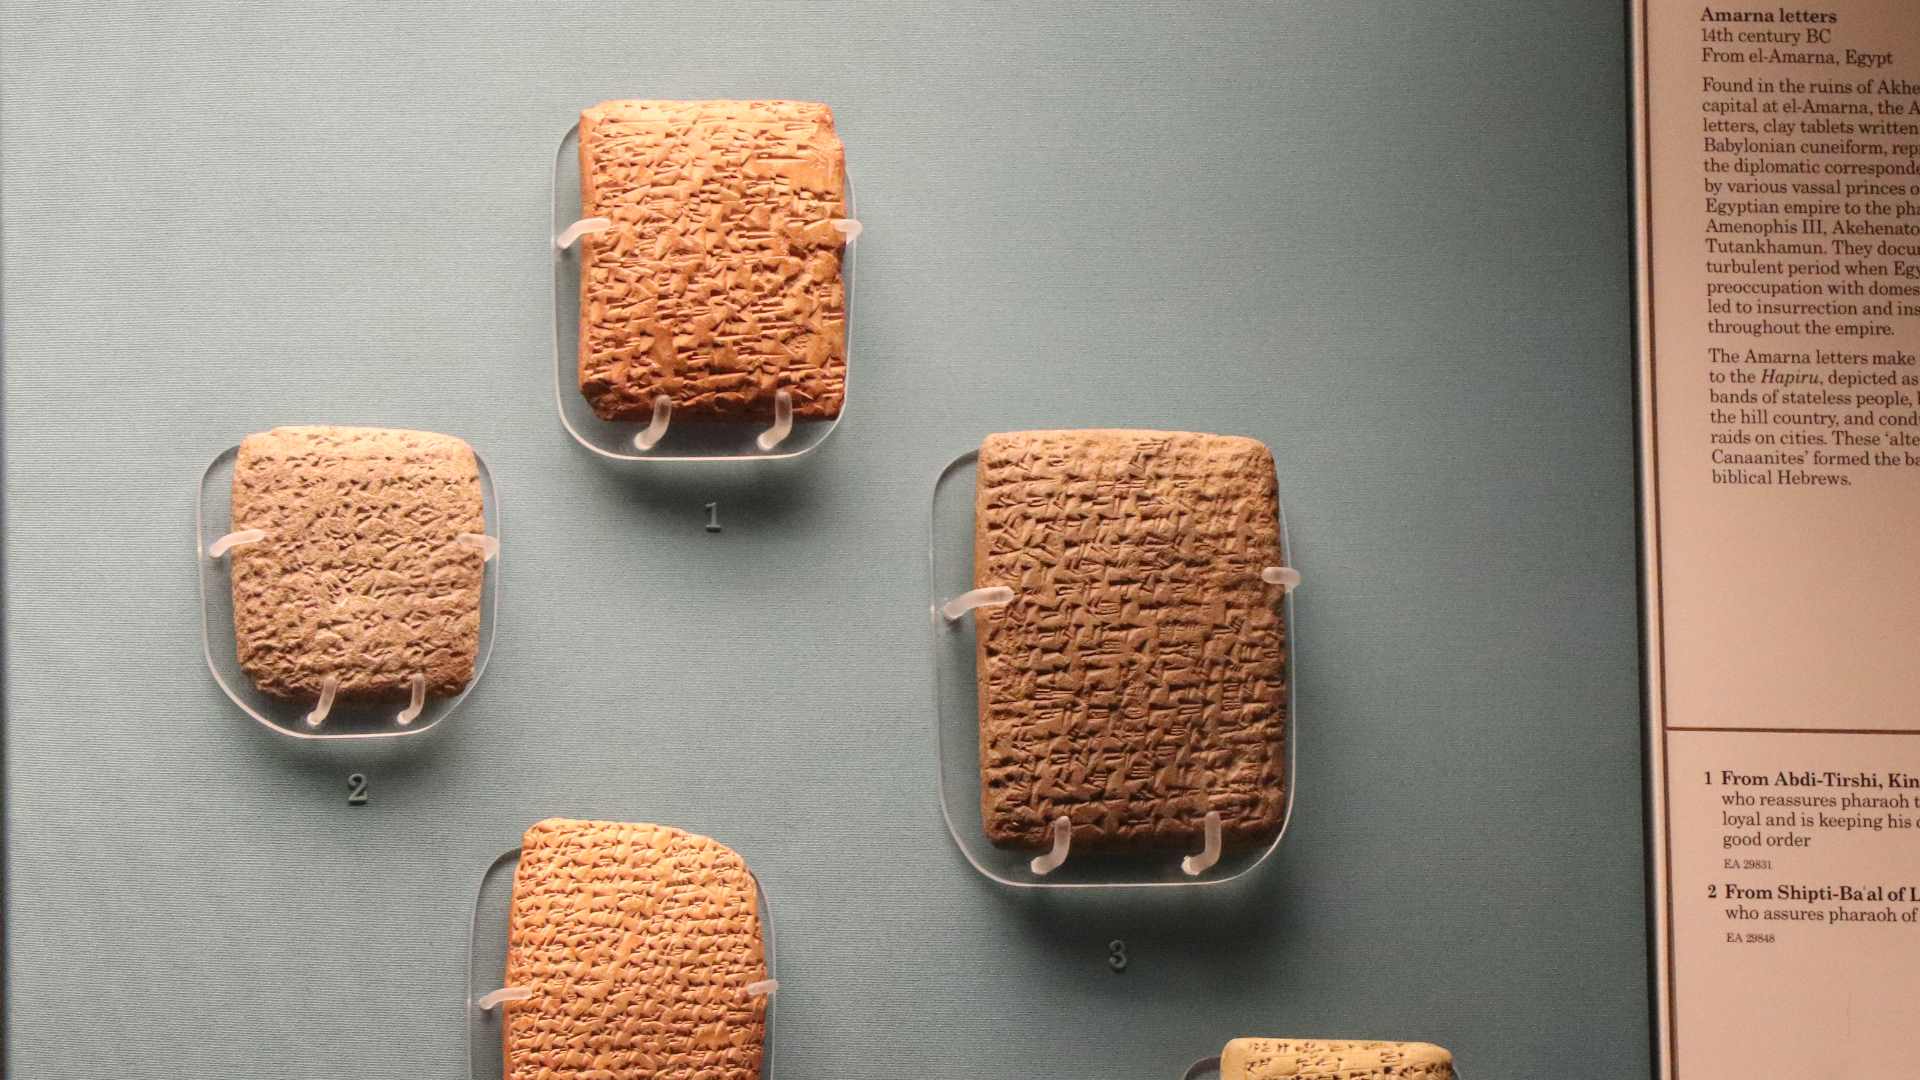 Lettres d'Amarna, capitale d'Akhénaton, Egypte - British Museum  - Photo P. Vauclair